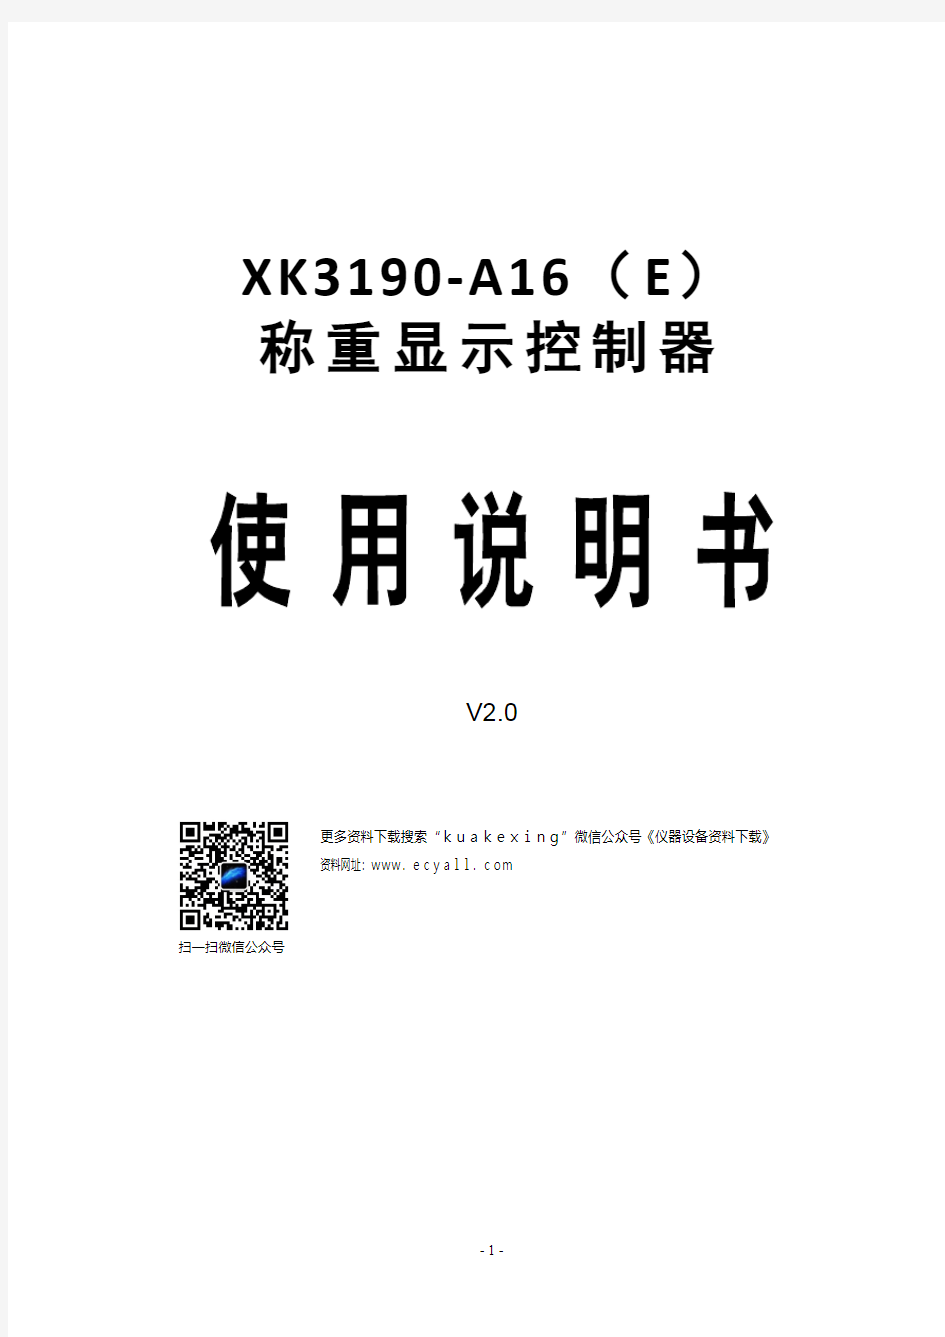 XK3190-A16(E)称重显示控制器使用说明书